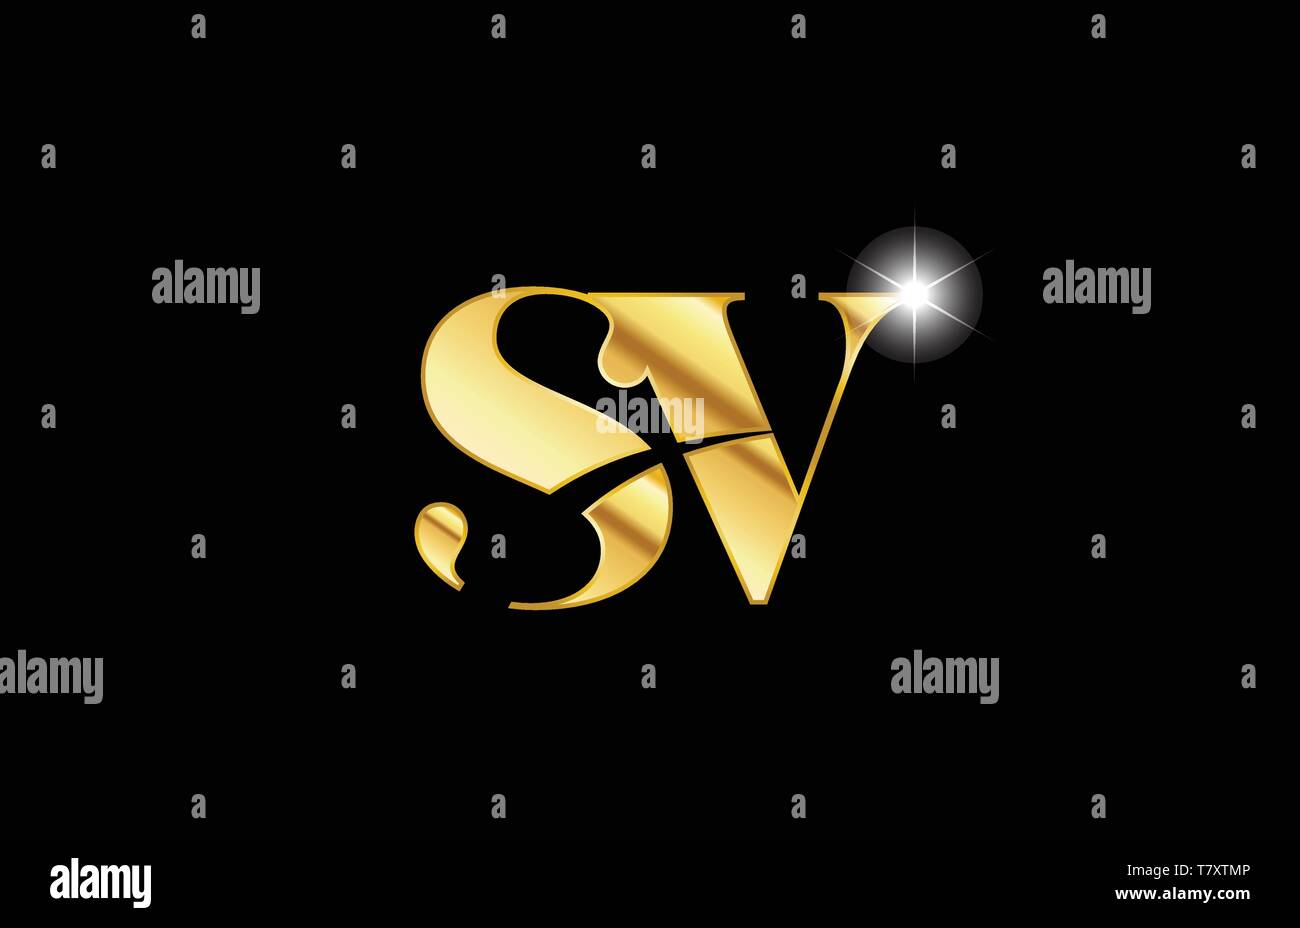 lv l v alphabet combination letter logo in gold golden 3d metal